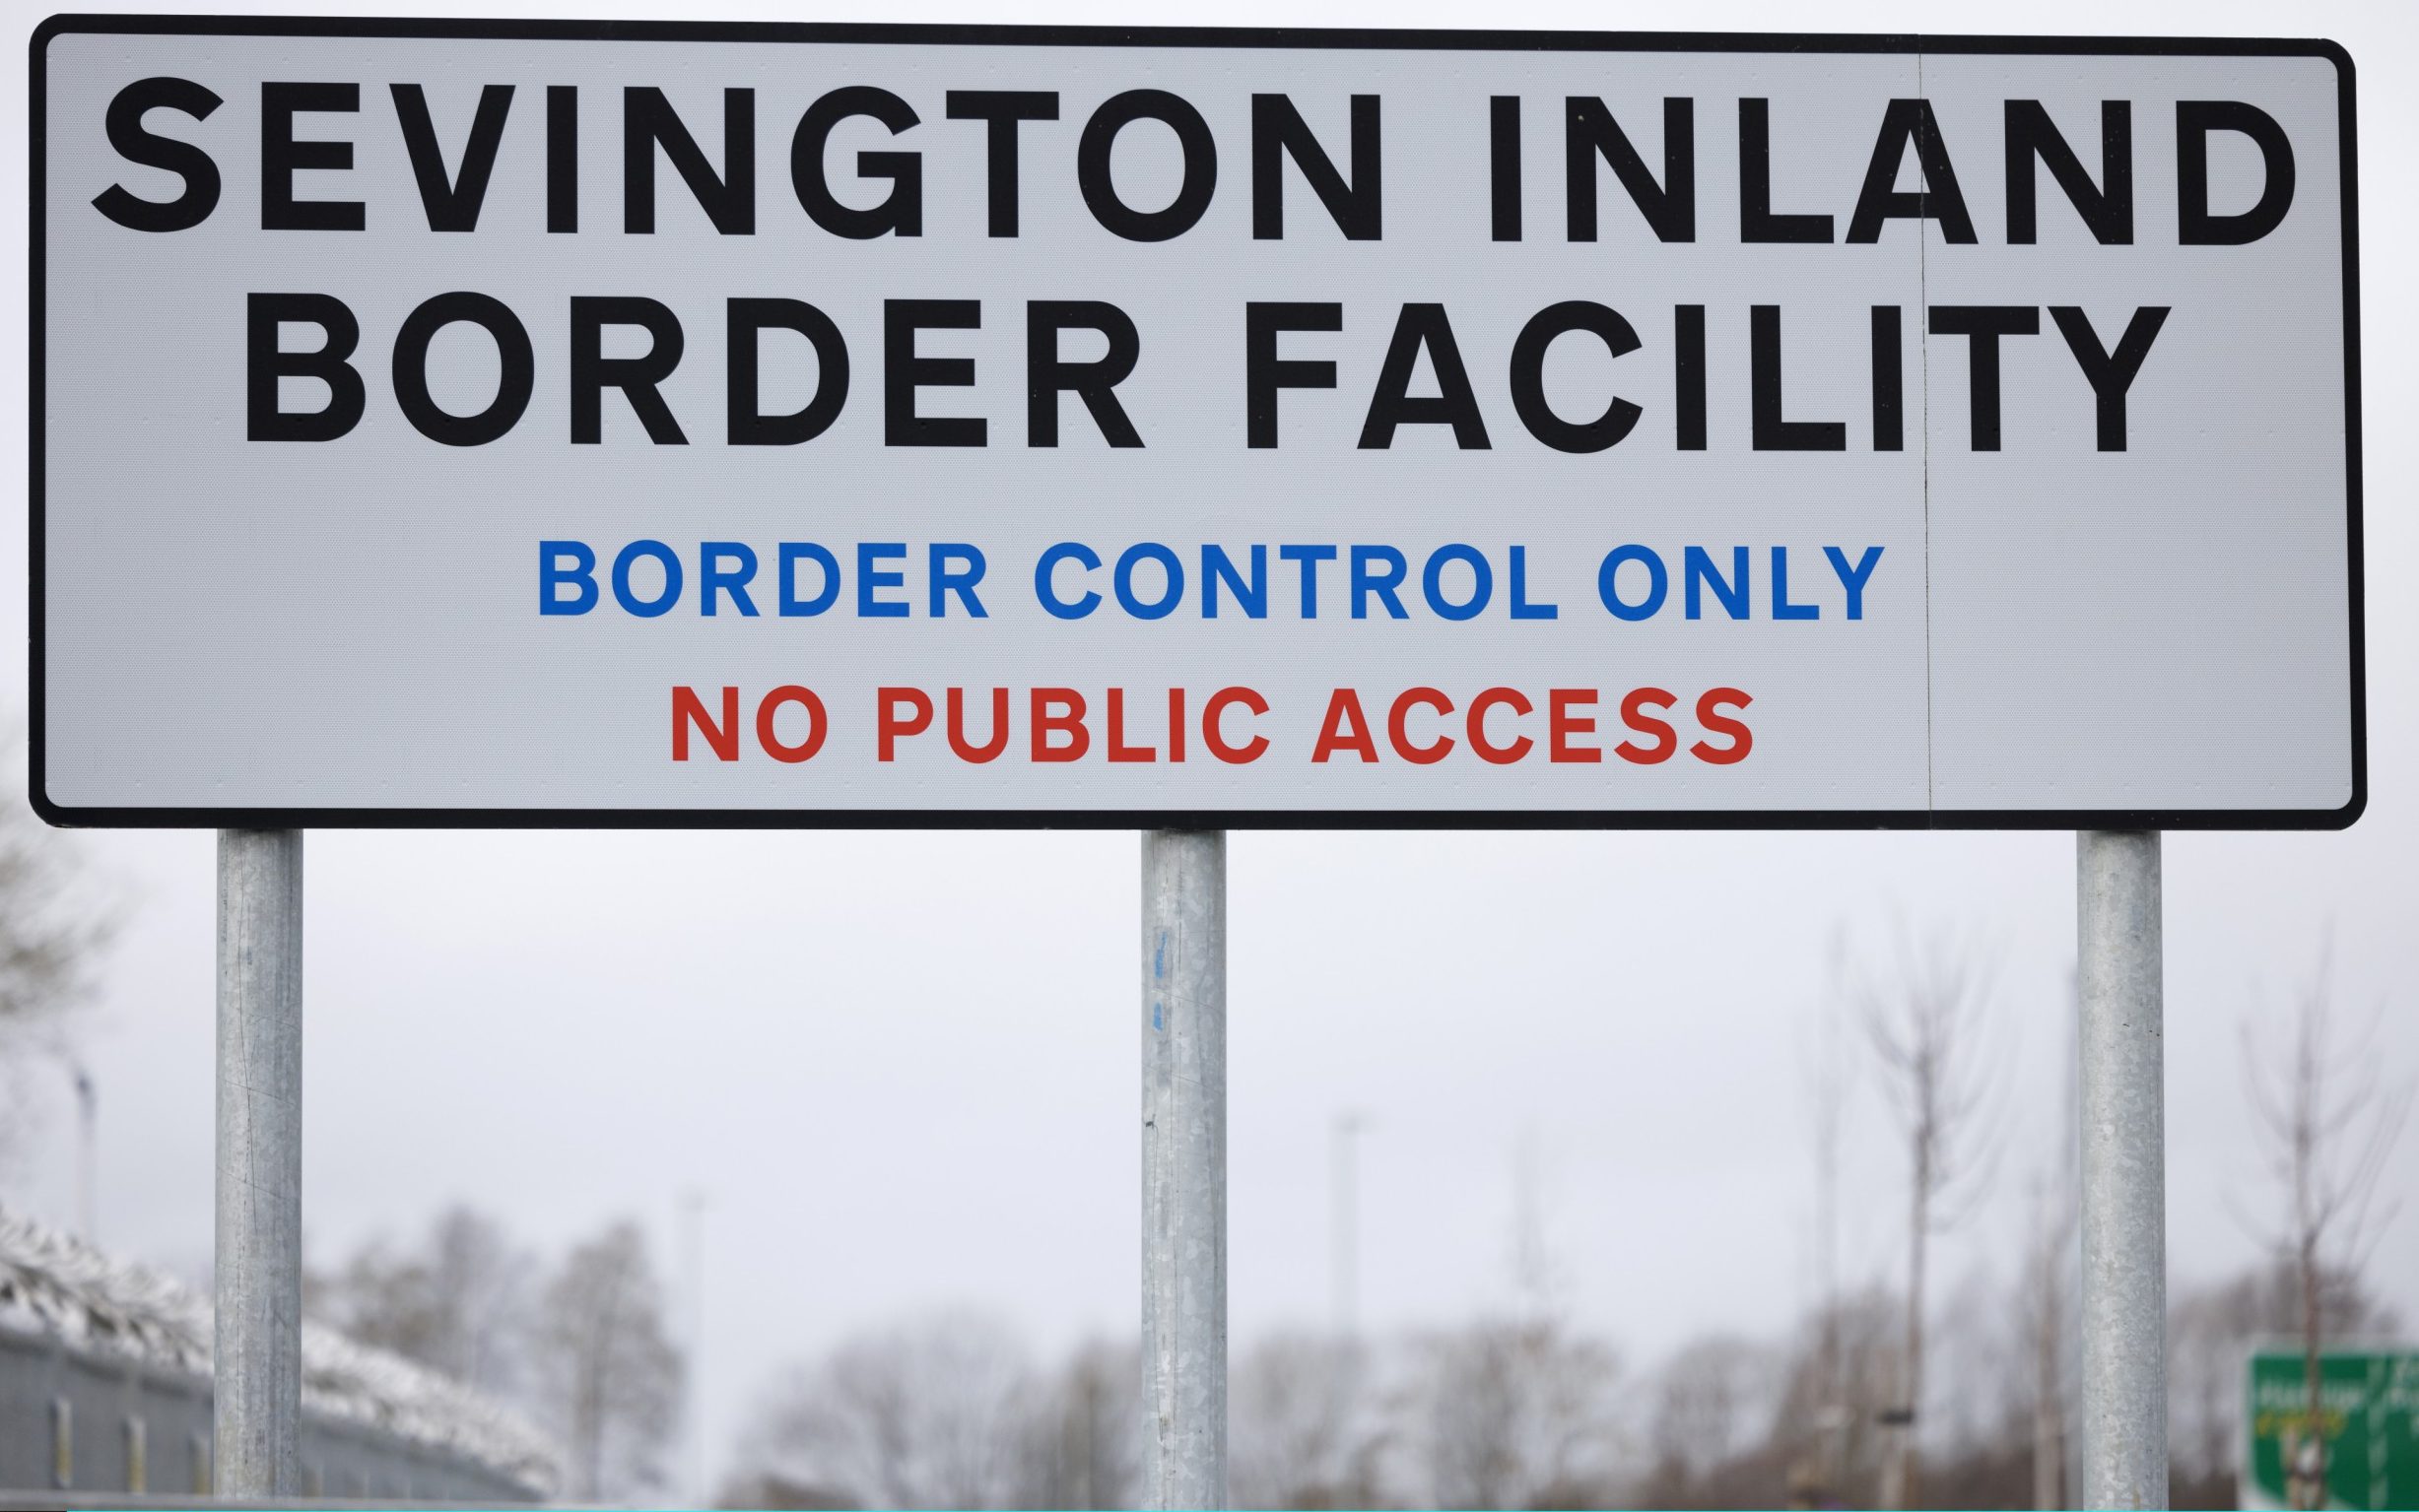 chaos warning at brexit border as inspectors clock off at 7pm